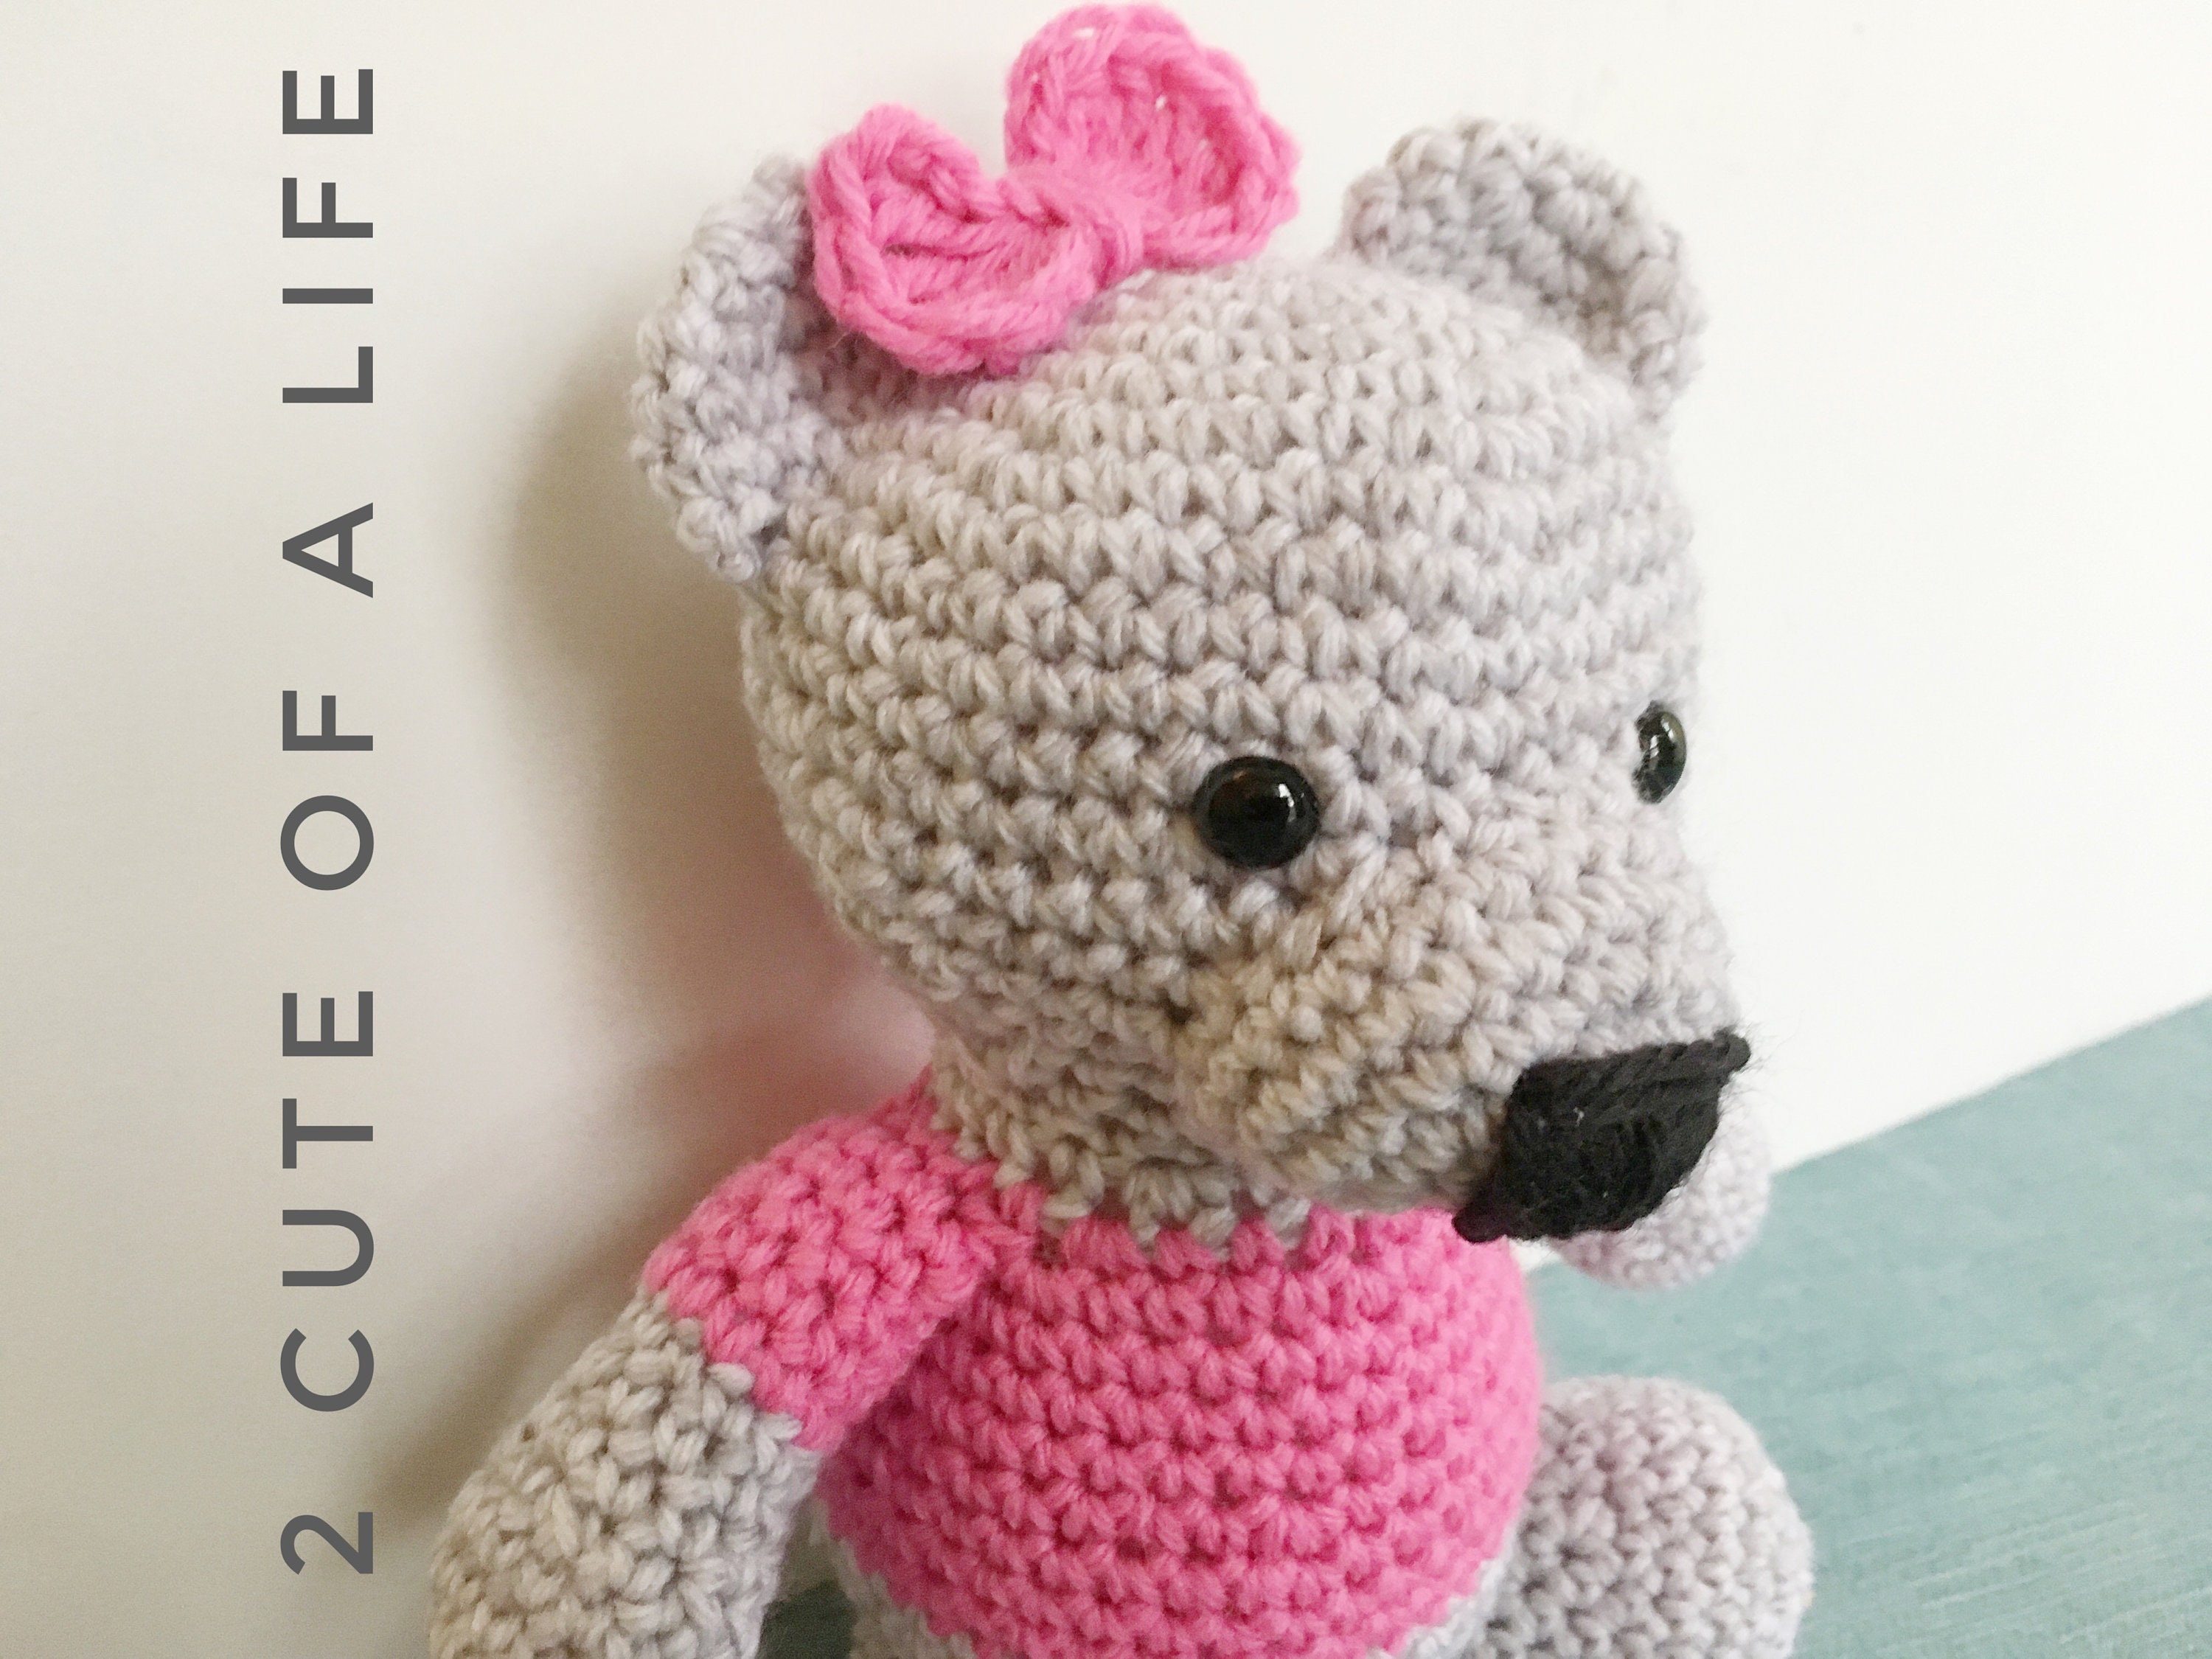 Crochet Teddy Bear - Free Pattern! - Leelee Knits